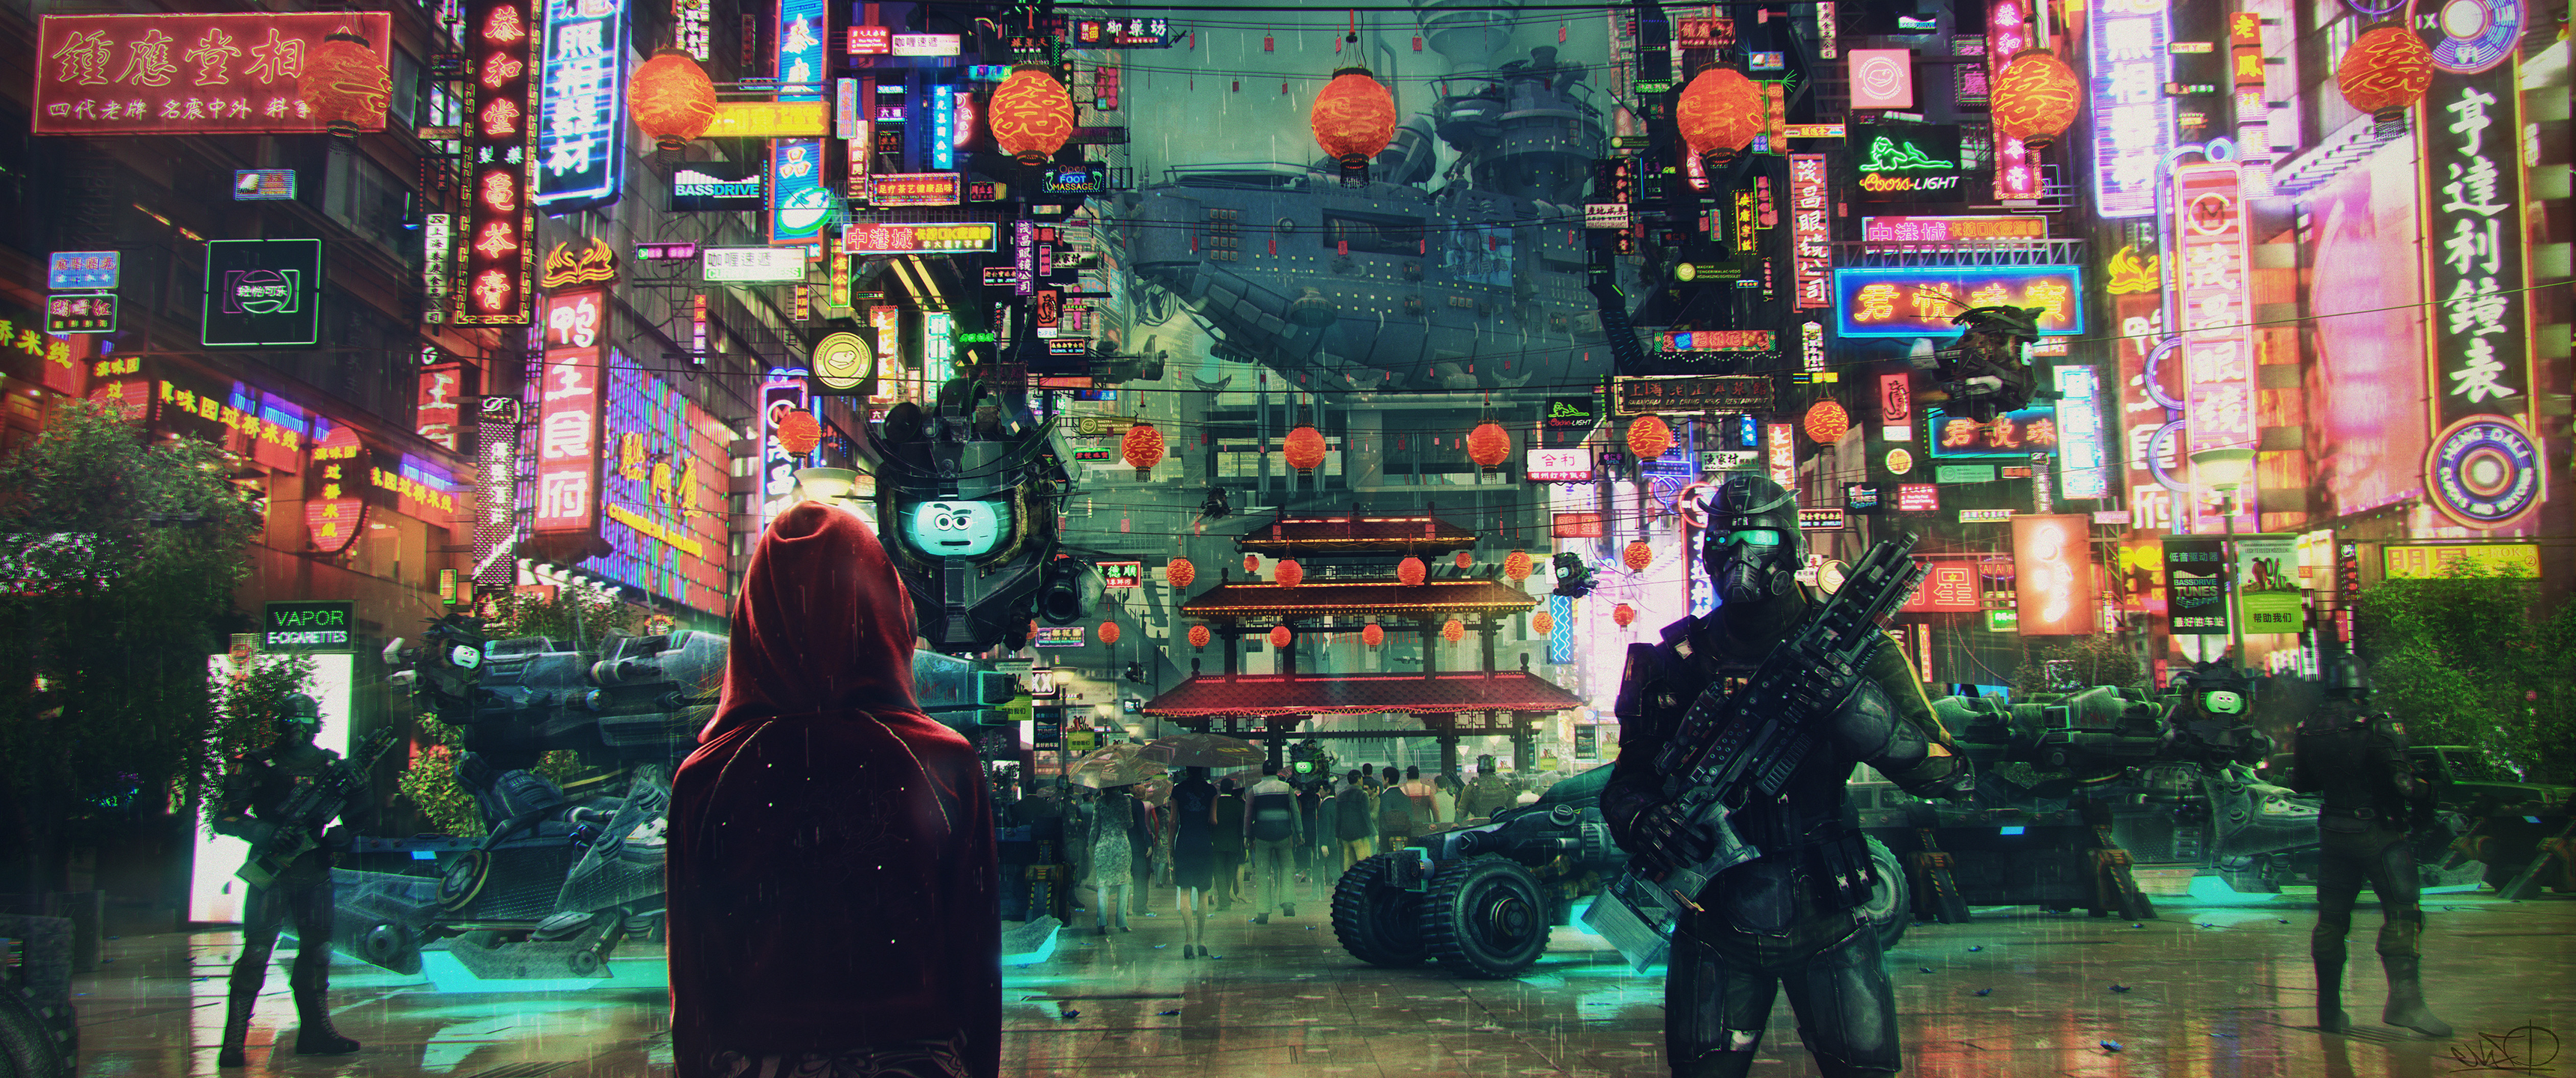 Cyberpunk 2077 UltraWide 21:9 wallpapers or desktop backgrounds